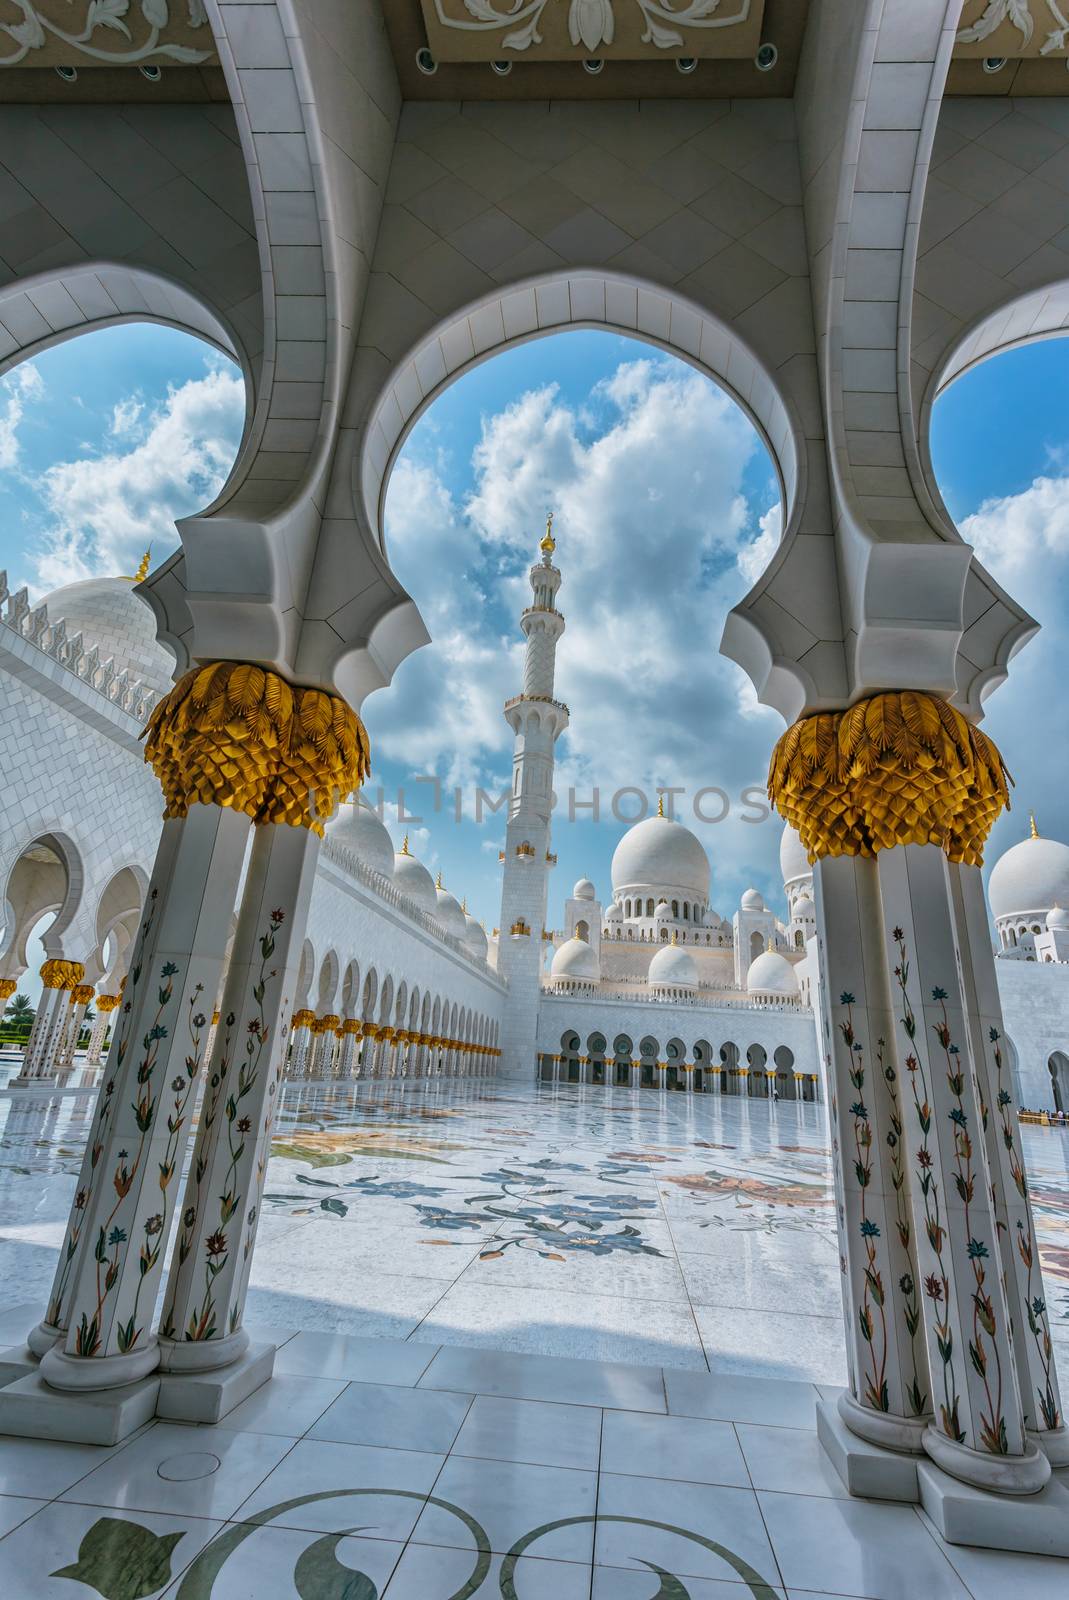 The Shaikh Zayed Mosque by oleg_zhukov